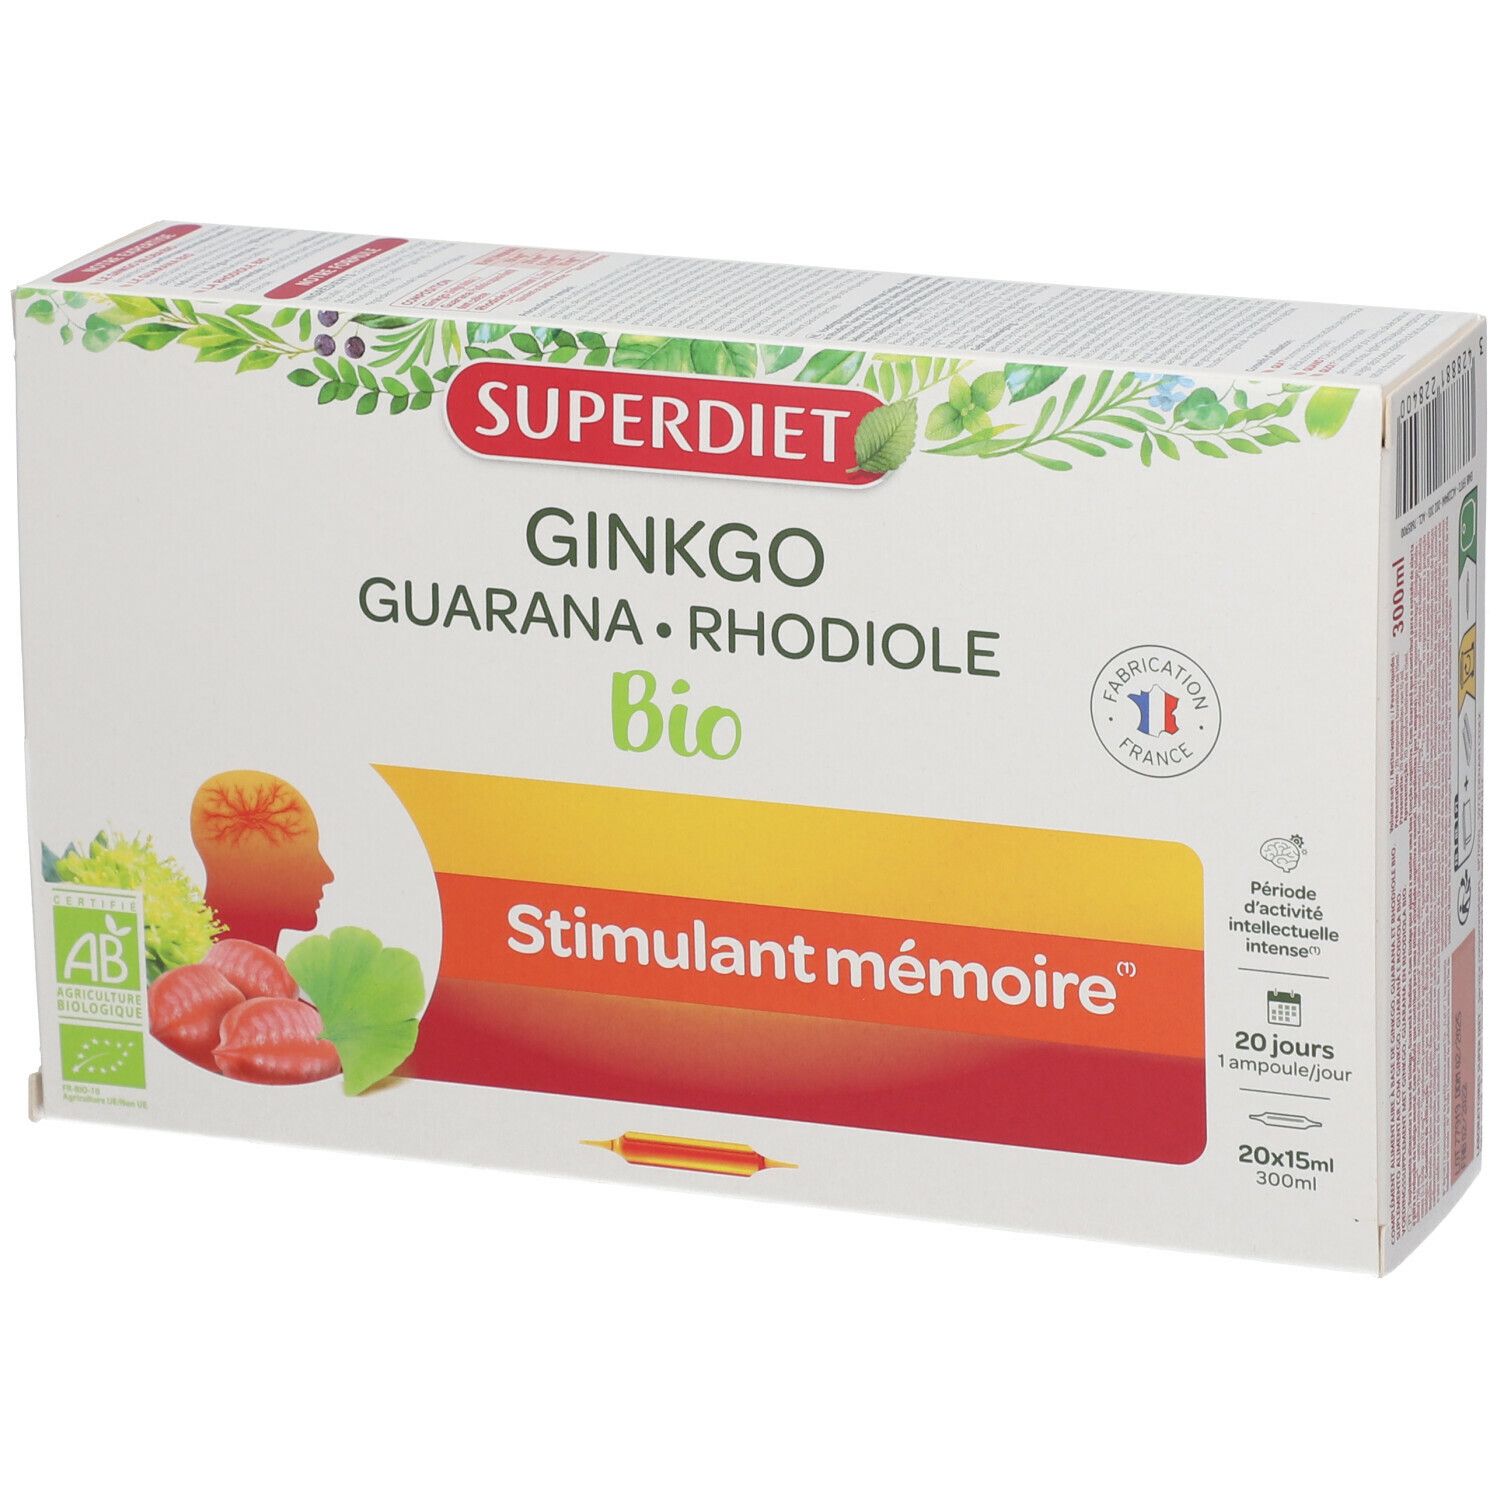 Super Diet Gingkgo Boost Bio Ampoule